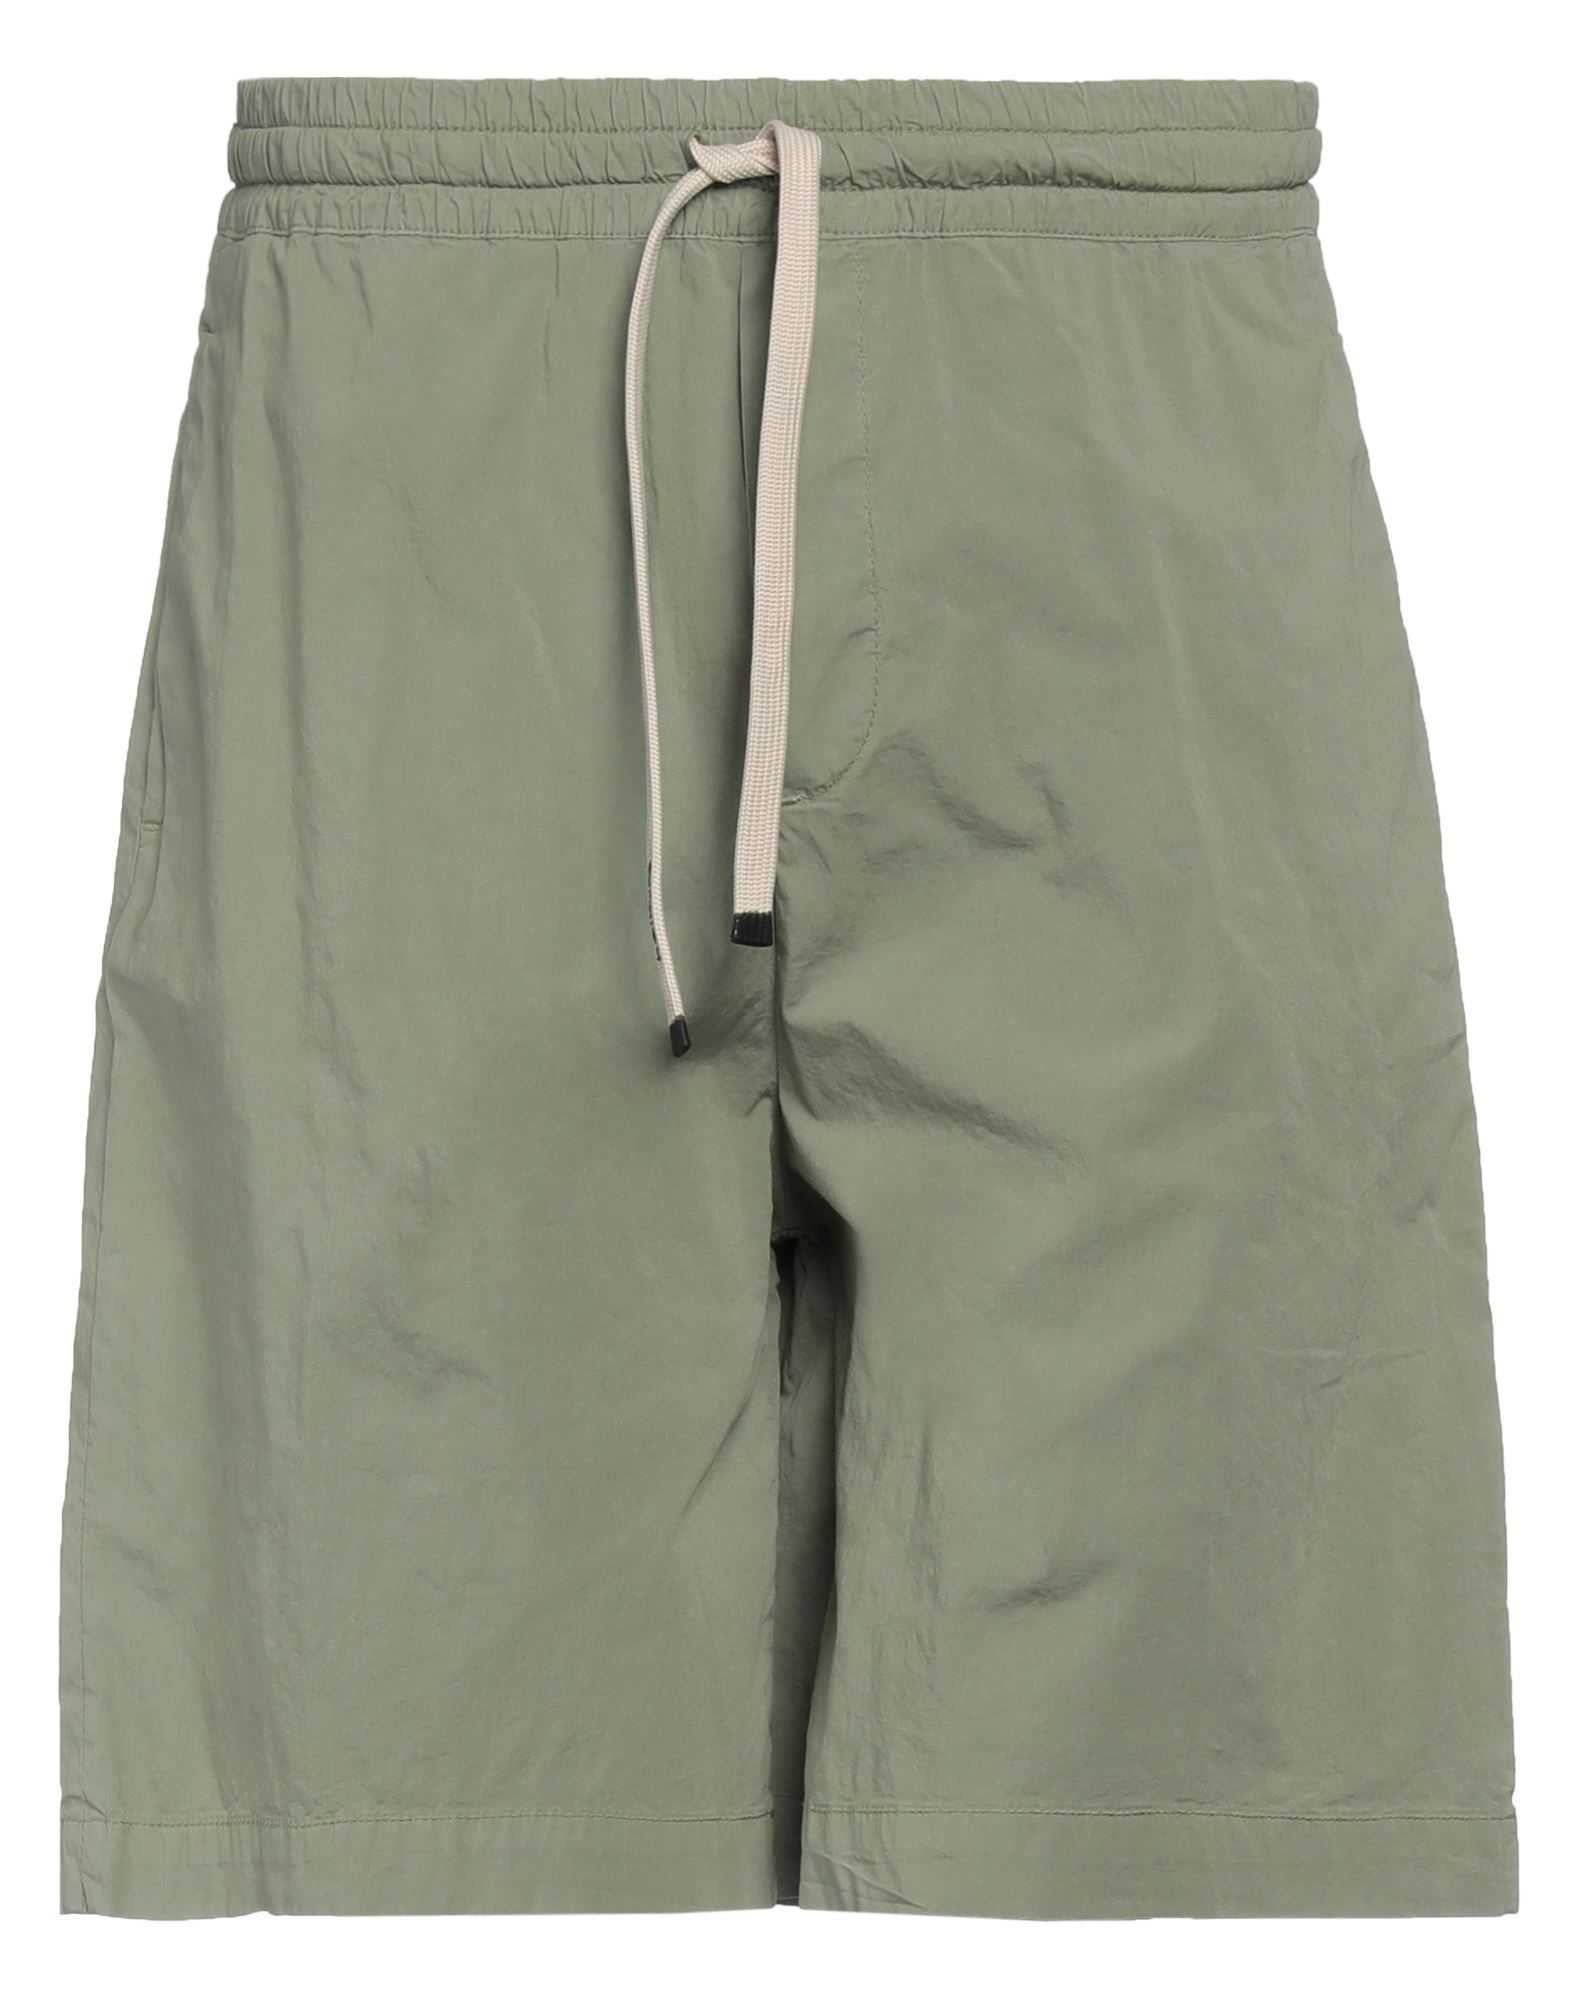 Haikure Man Shorts & Bermuda Shorts Sage Green Size S Cotton, Elastane